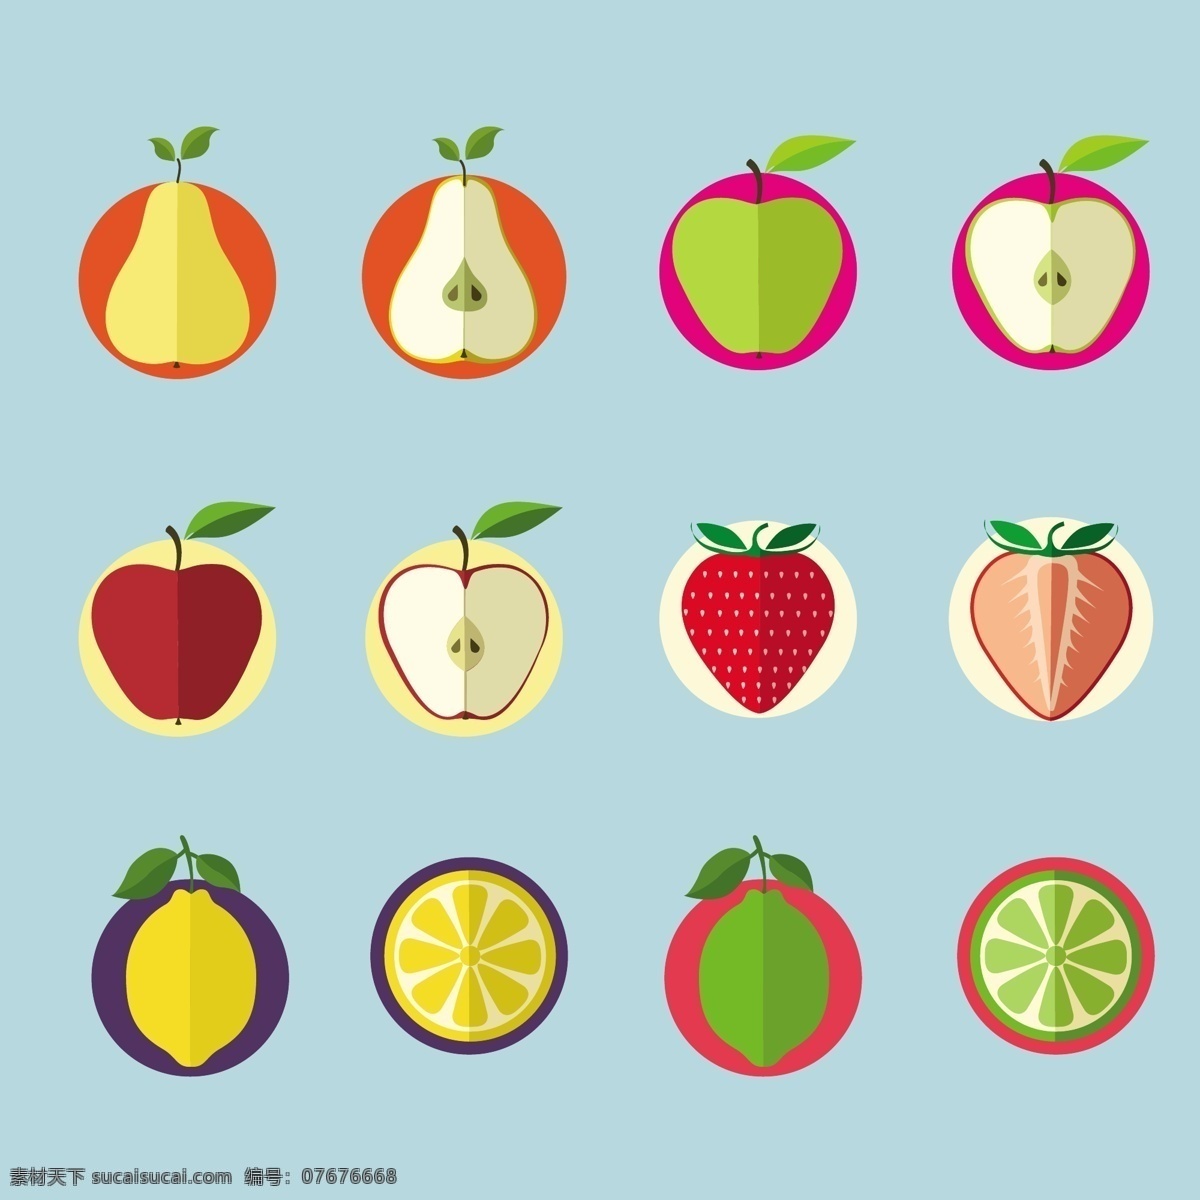 水果图标集 食品 水果 蔬菜 夏天 苹果 健康 健康食品 饮食 营养 新鲜 石灰 梨 枸橼